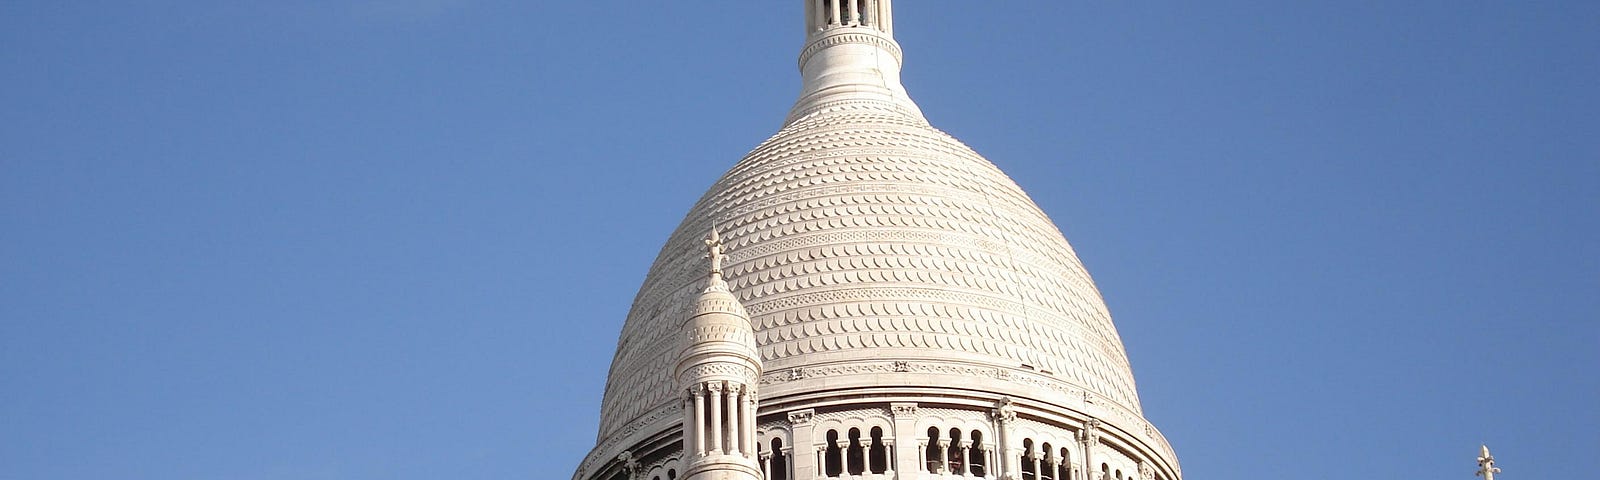 Domes of the Sacré Coeur in Paris, as an illustration for the song La Complainte de la Butte.